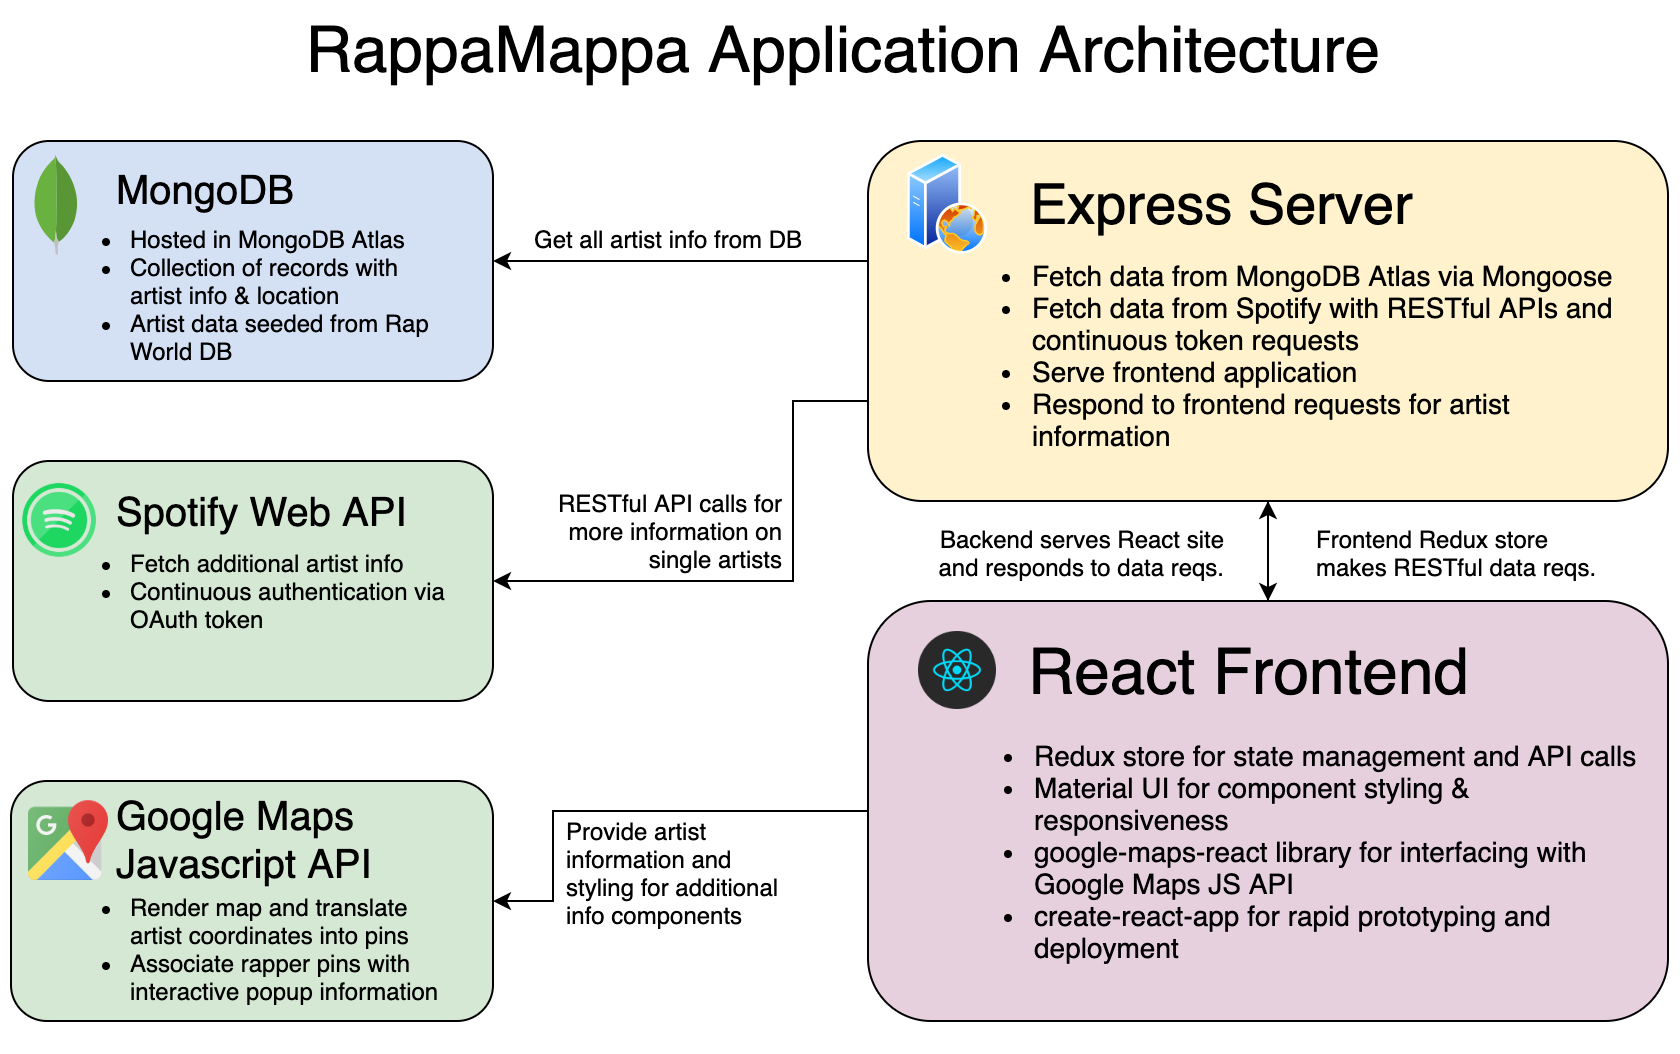 RappaMappa application architecture